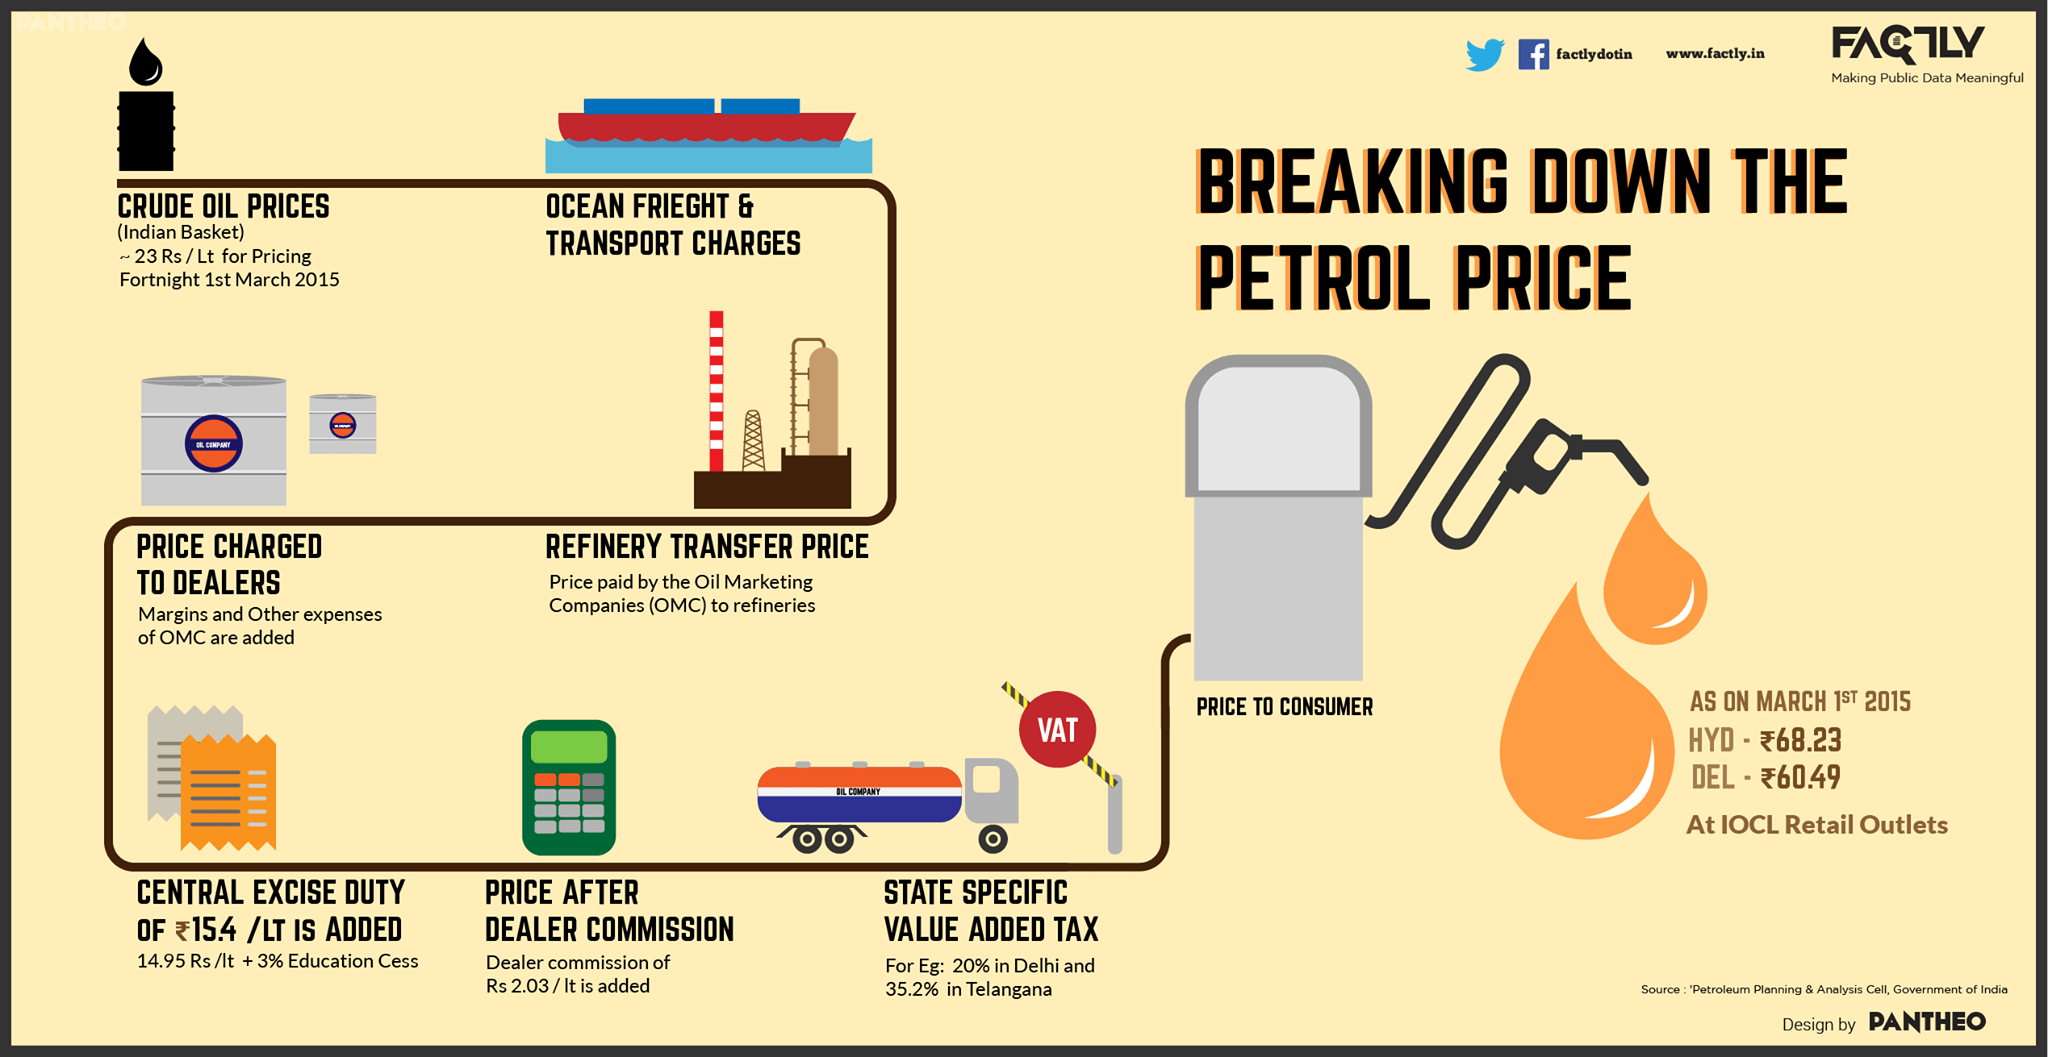 Вот инфографика, объясняющая разбивку цен на бензин, начиная с цены на сырую нефть и до конечного потребителя, включая различные компоненты ценообразования